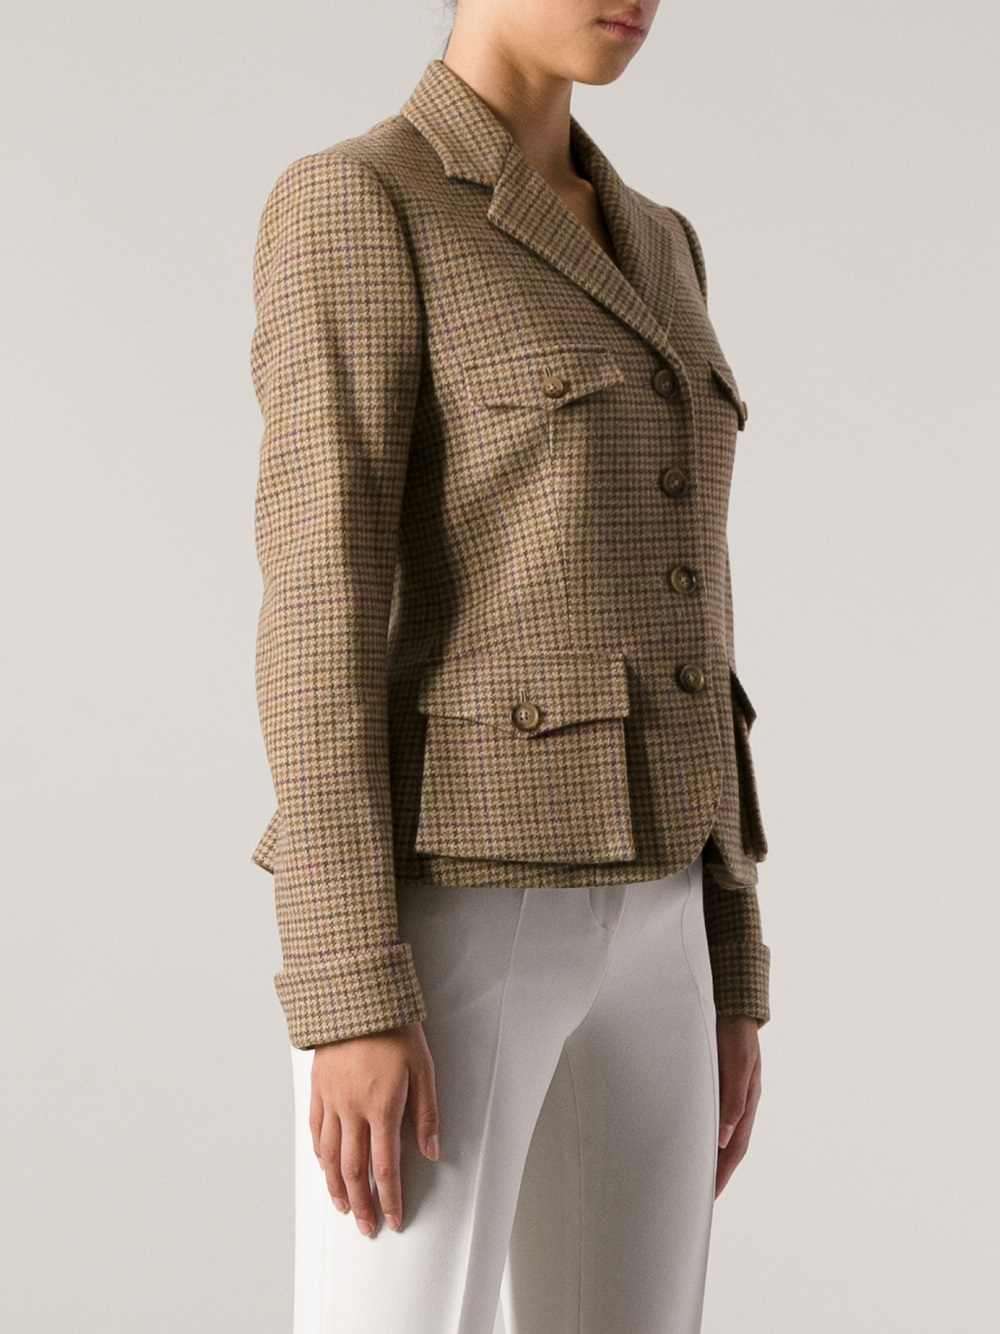 Lyst - Ralph Lauren Jess Tweed Jacket in Brown